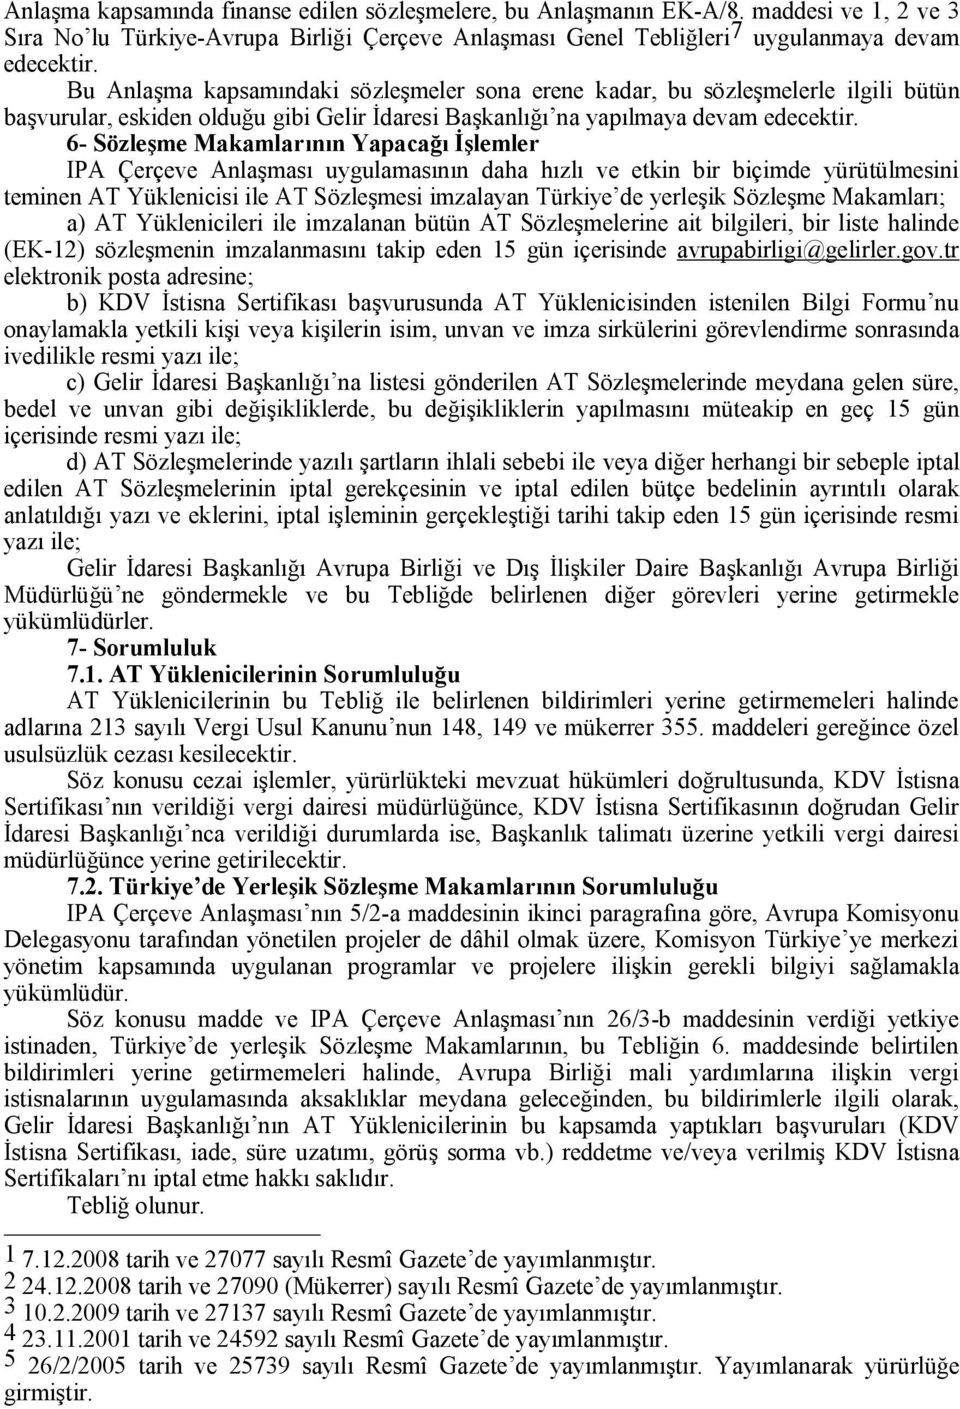 6- Sözleşme Makamlarının Yapacağı İşlemler IPA Çerçeve Anlaşması uygulamasının daha hızlı ve etkin bir biçimde yürütülmesini teminen AT Yüklenicisi ile AT Sözleşmesi imzalayan Türkiye de yerleşik